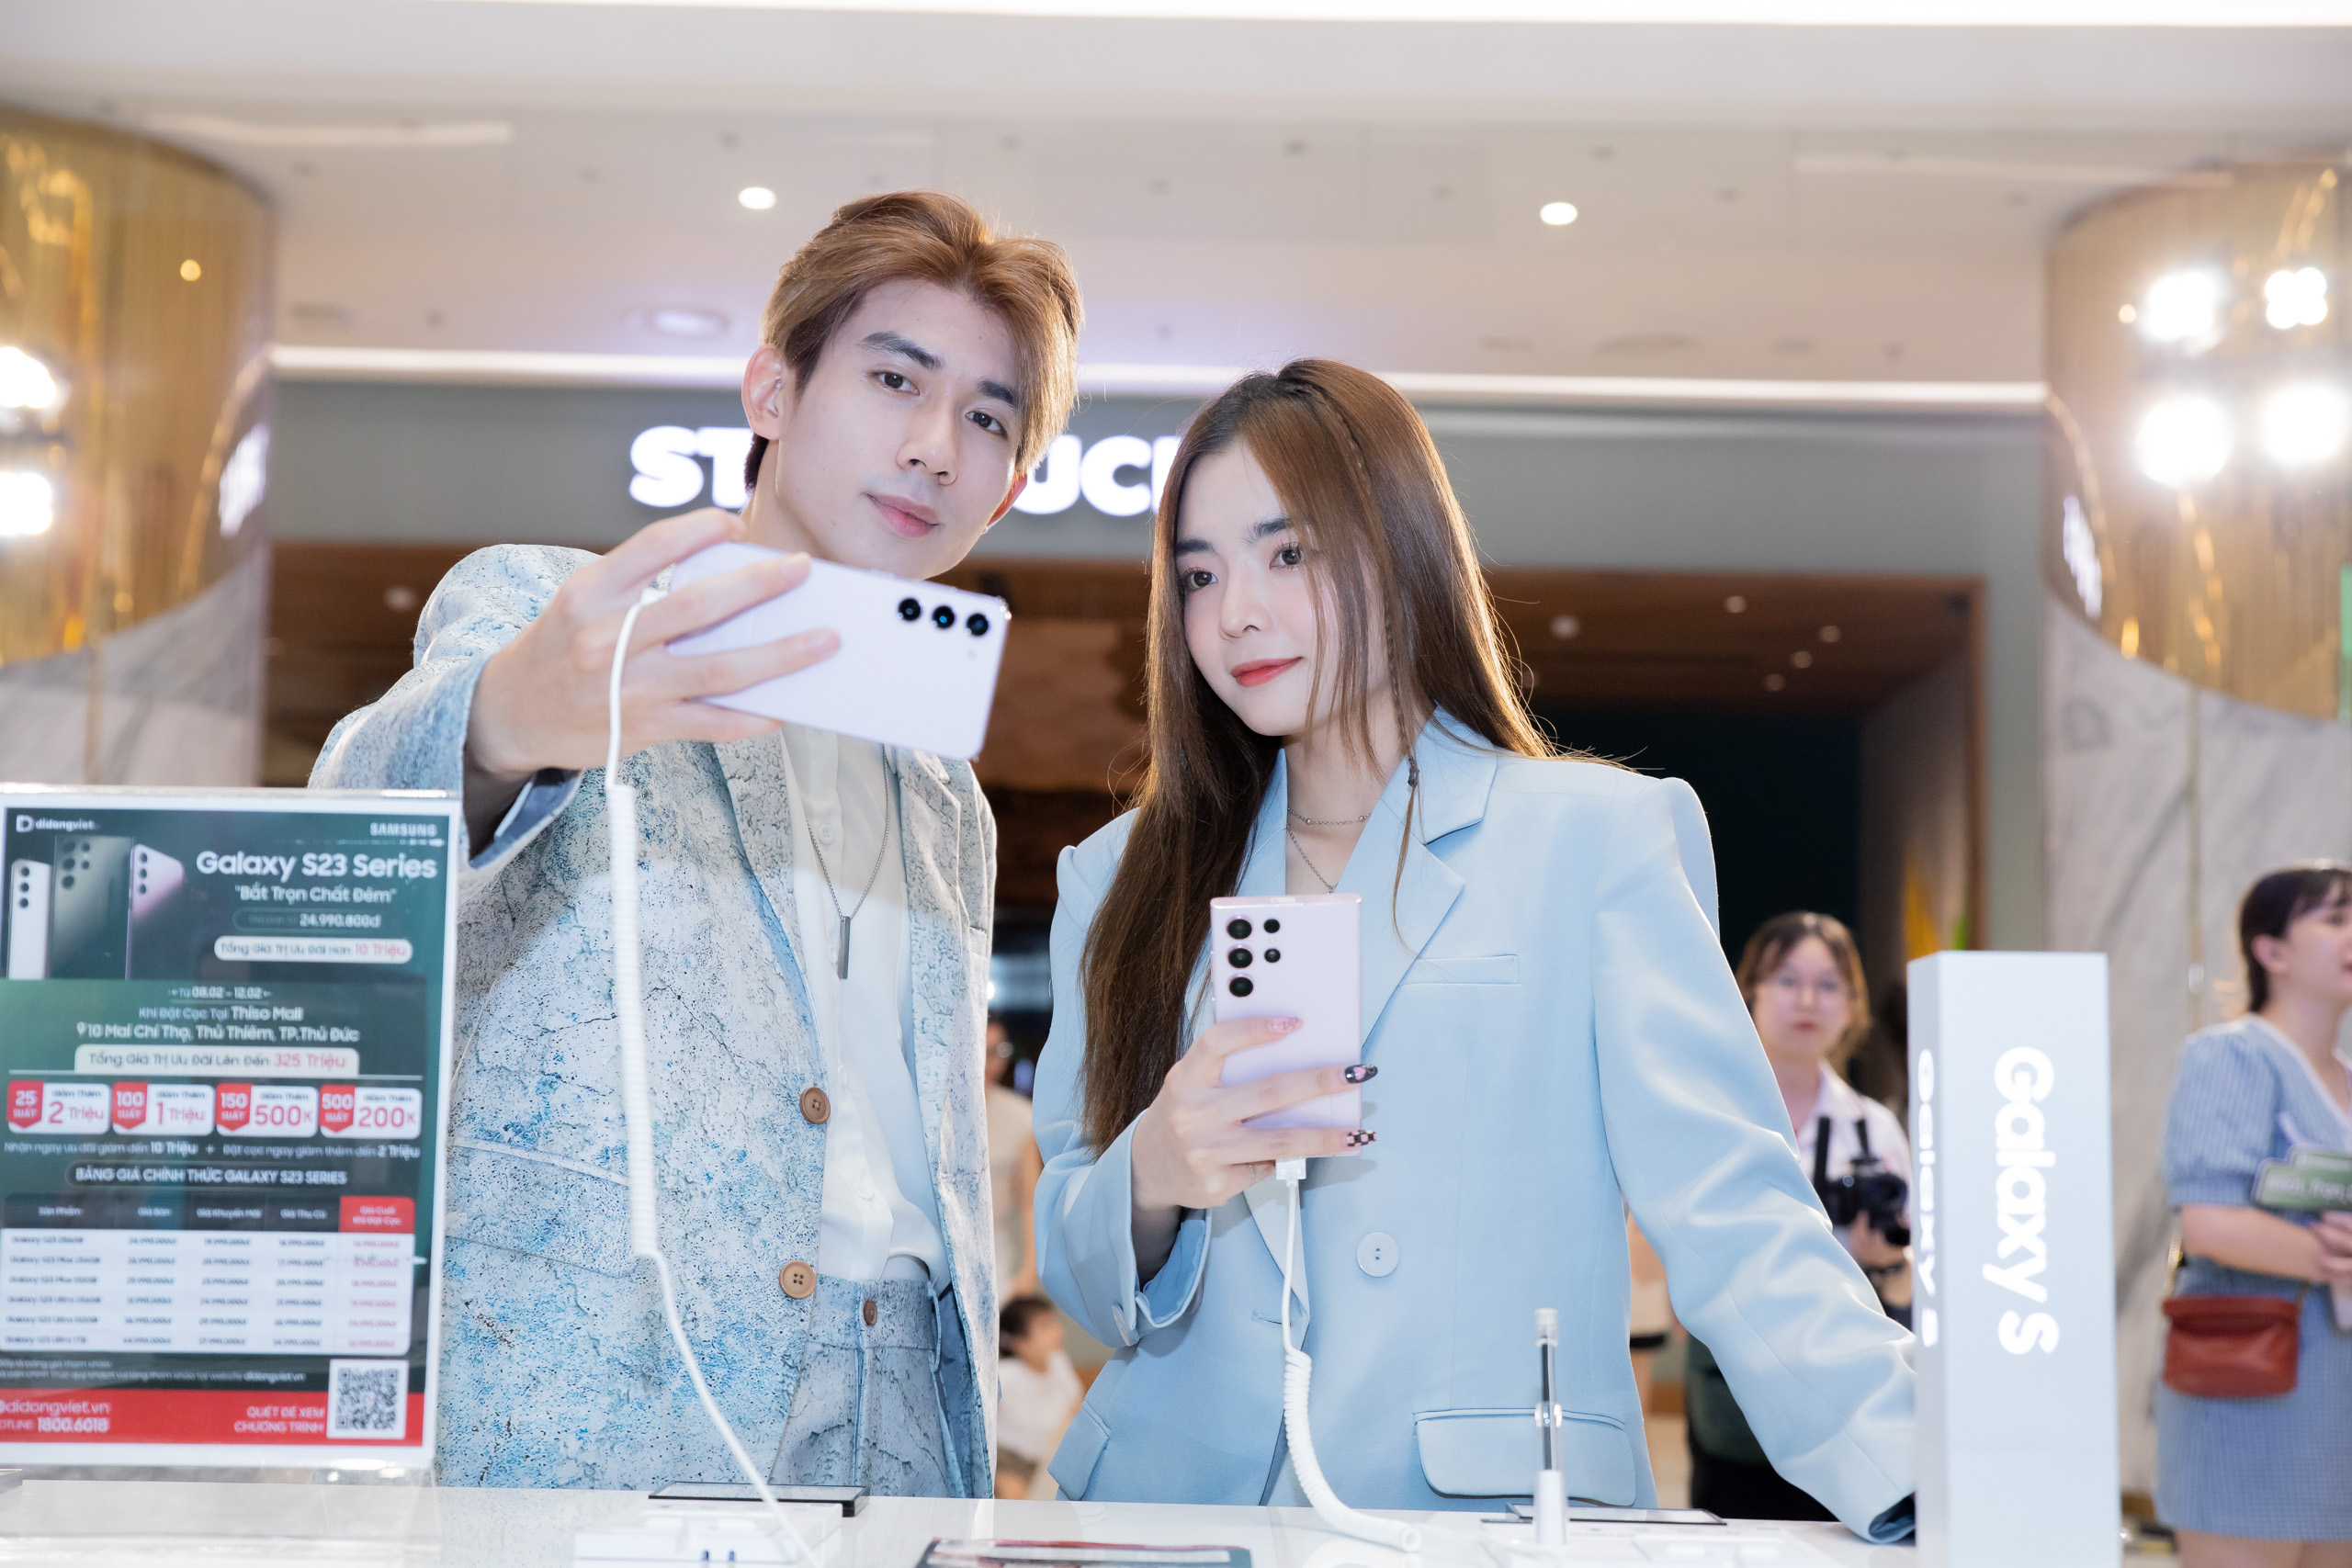 Di Động Việt và Samsung tổ chức sự kiện trải nghiệm Galaxy S23 series siêu hoành tráng, bộ quà đến 325 triệu đồng